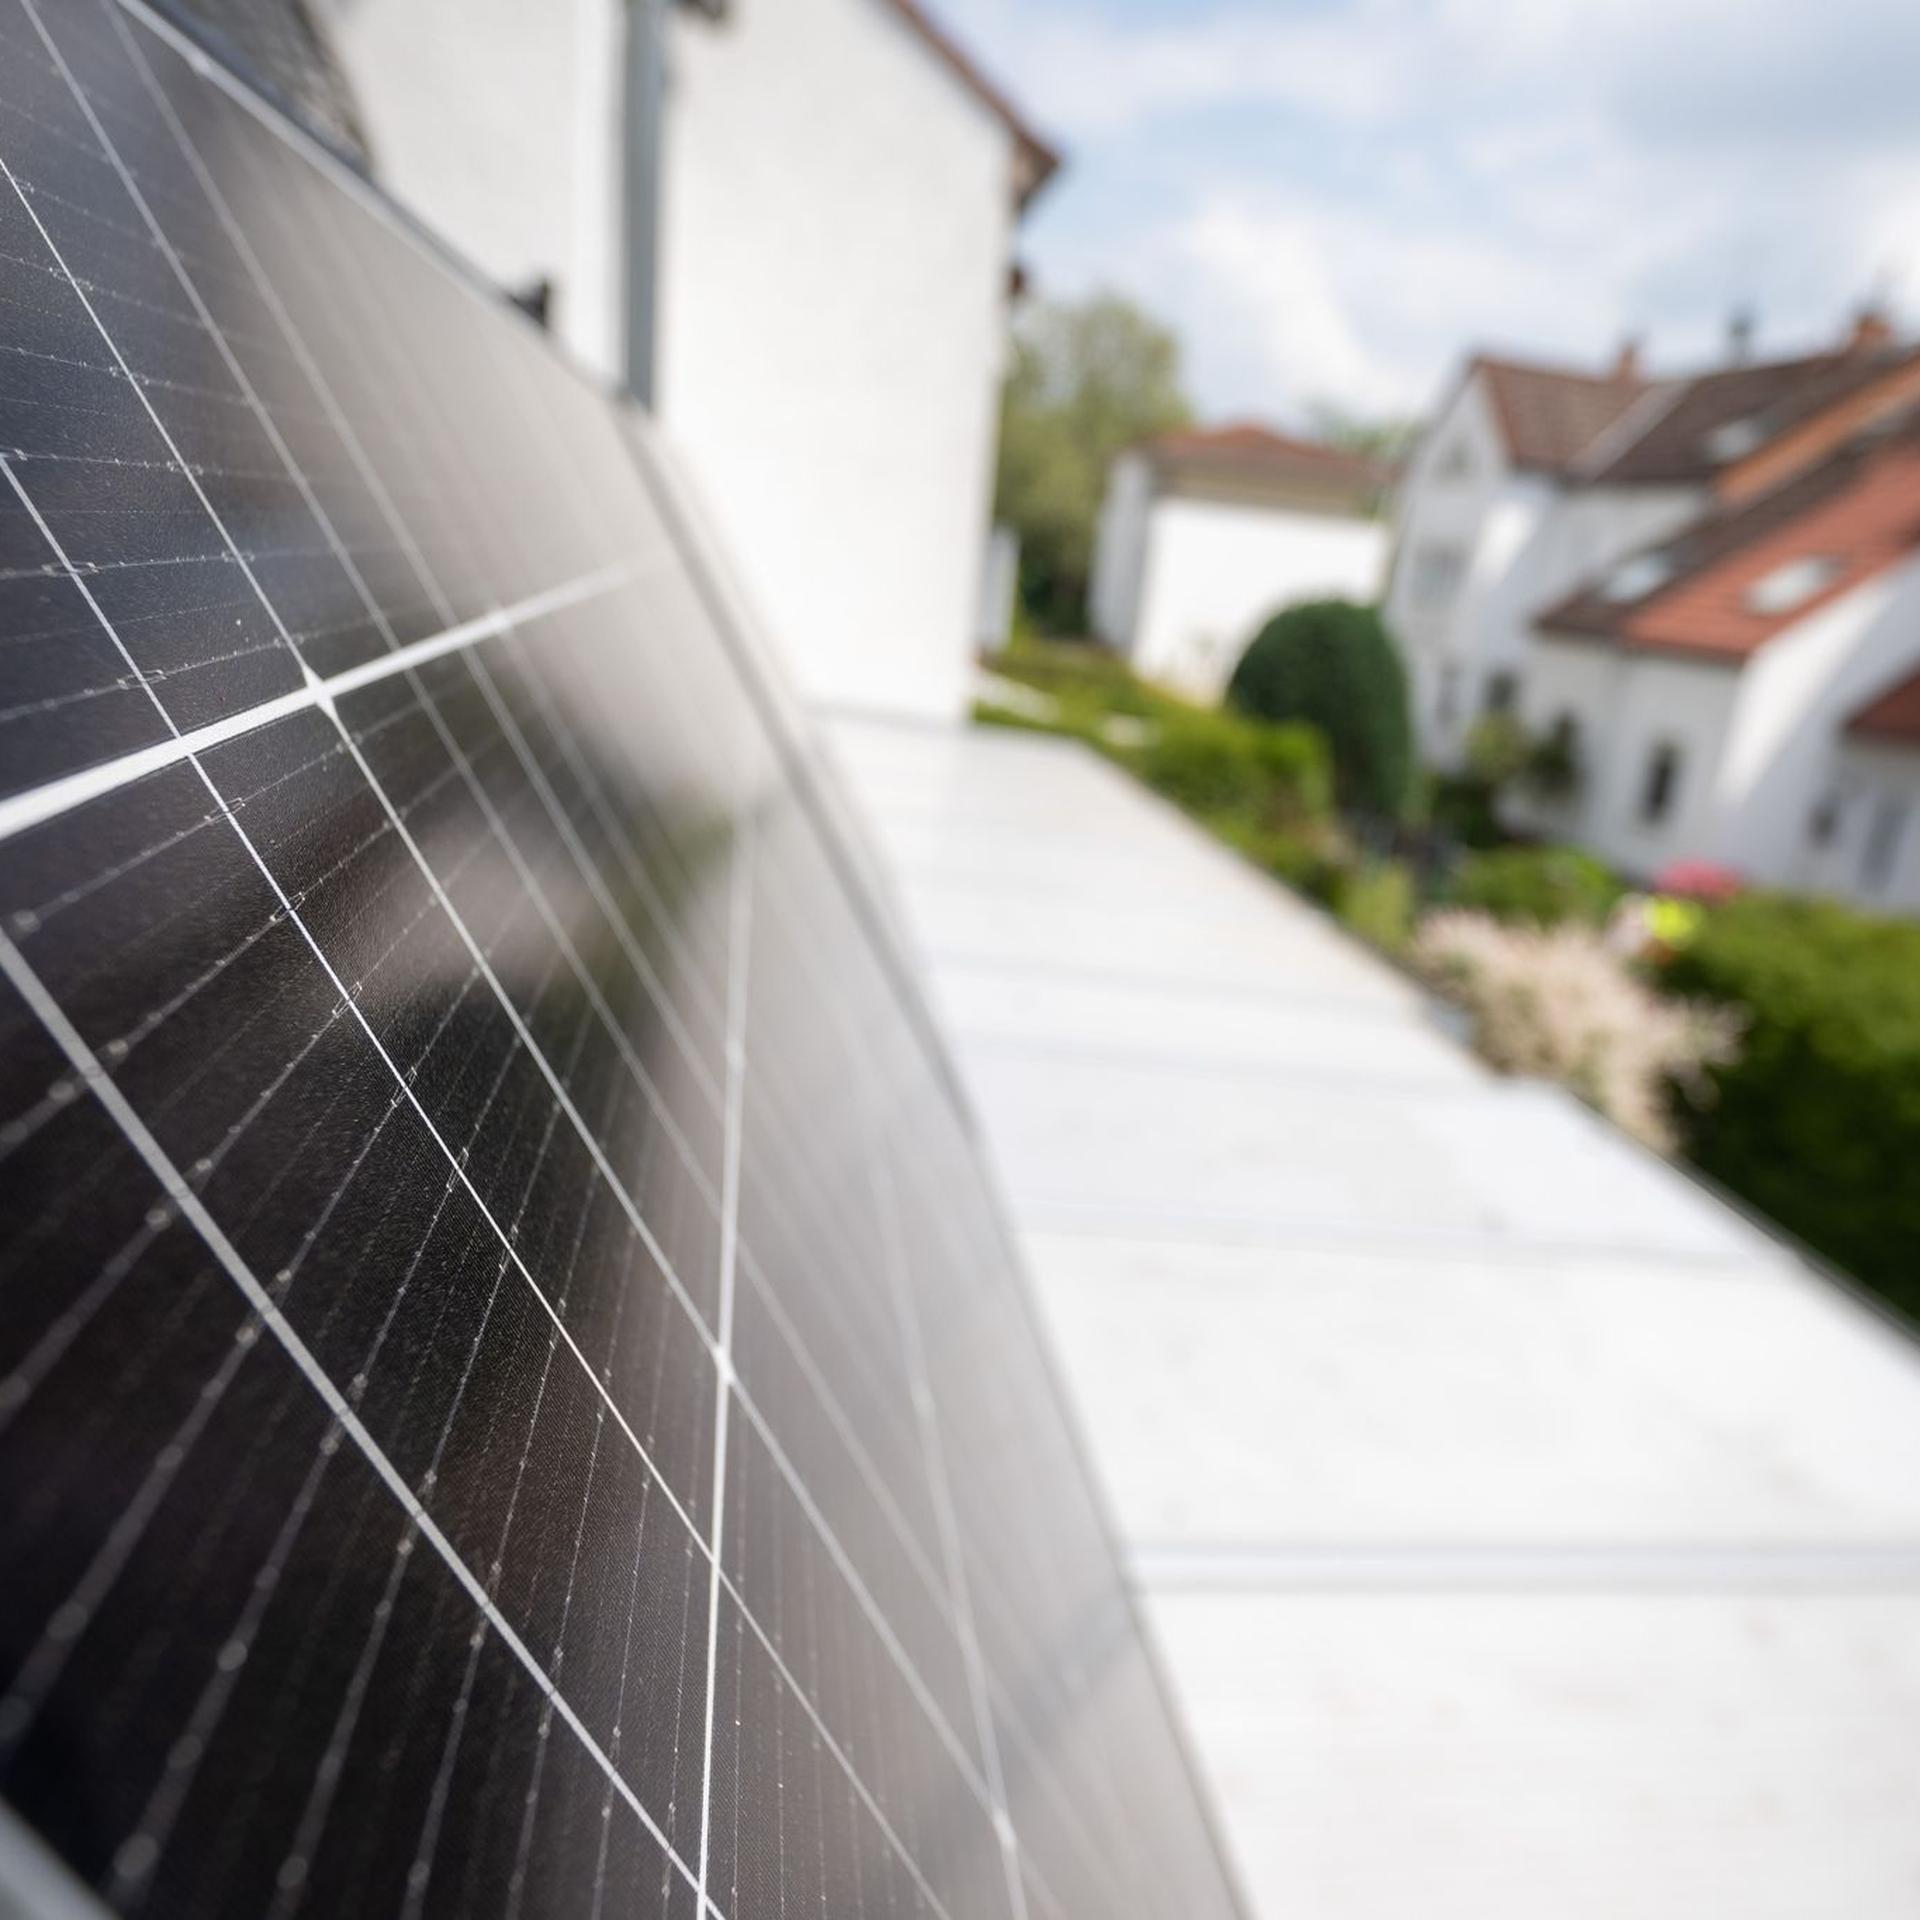 Durch das Solarpaket vereinfacht die Bundesregierung zukünftig die Installation von Steckersolargeräten für Verbraucherinnen und Verbraucher.